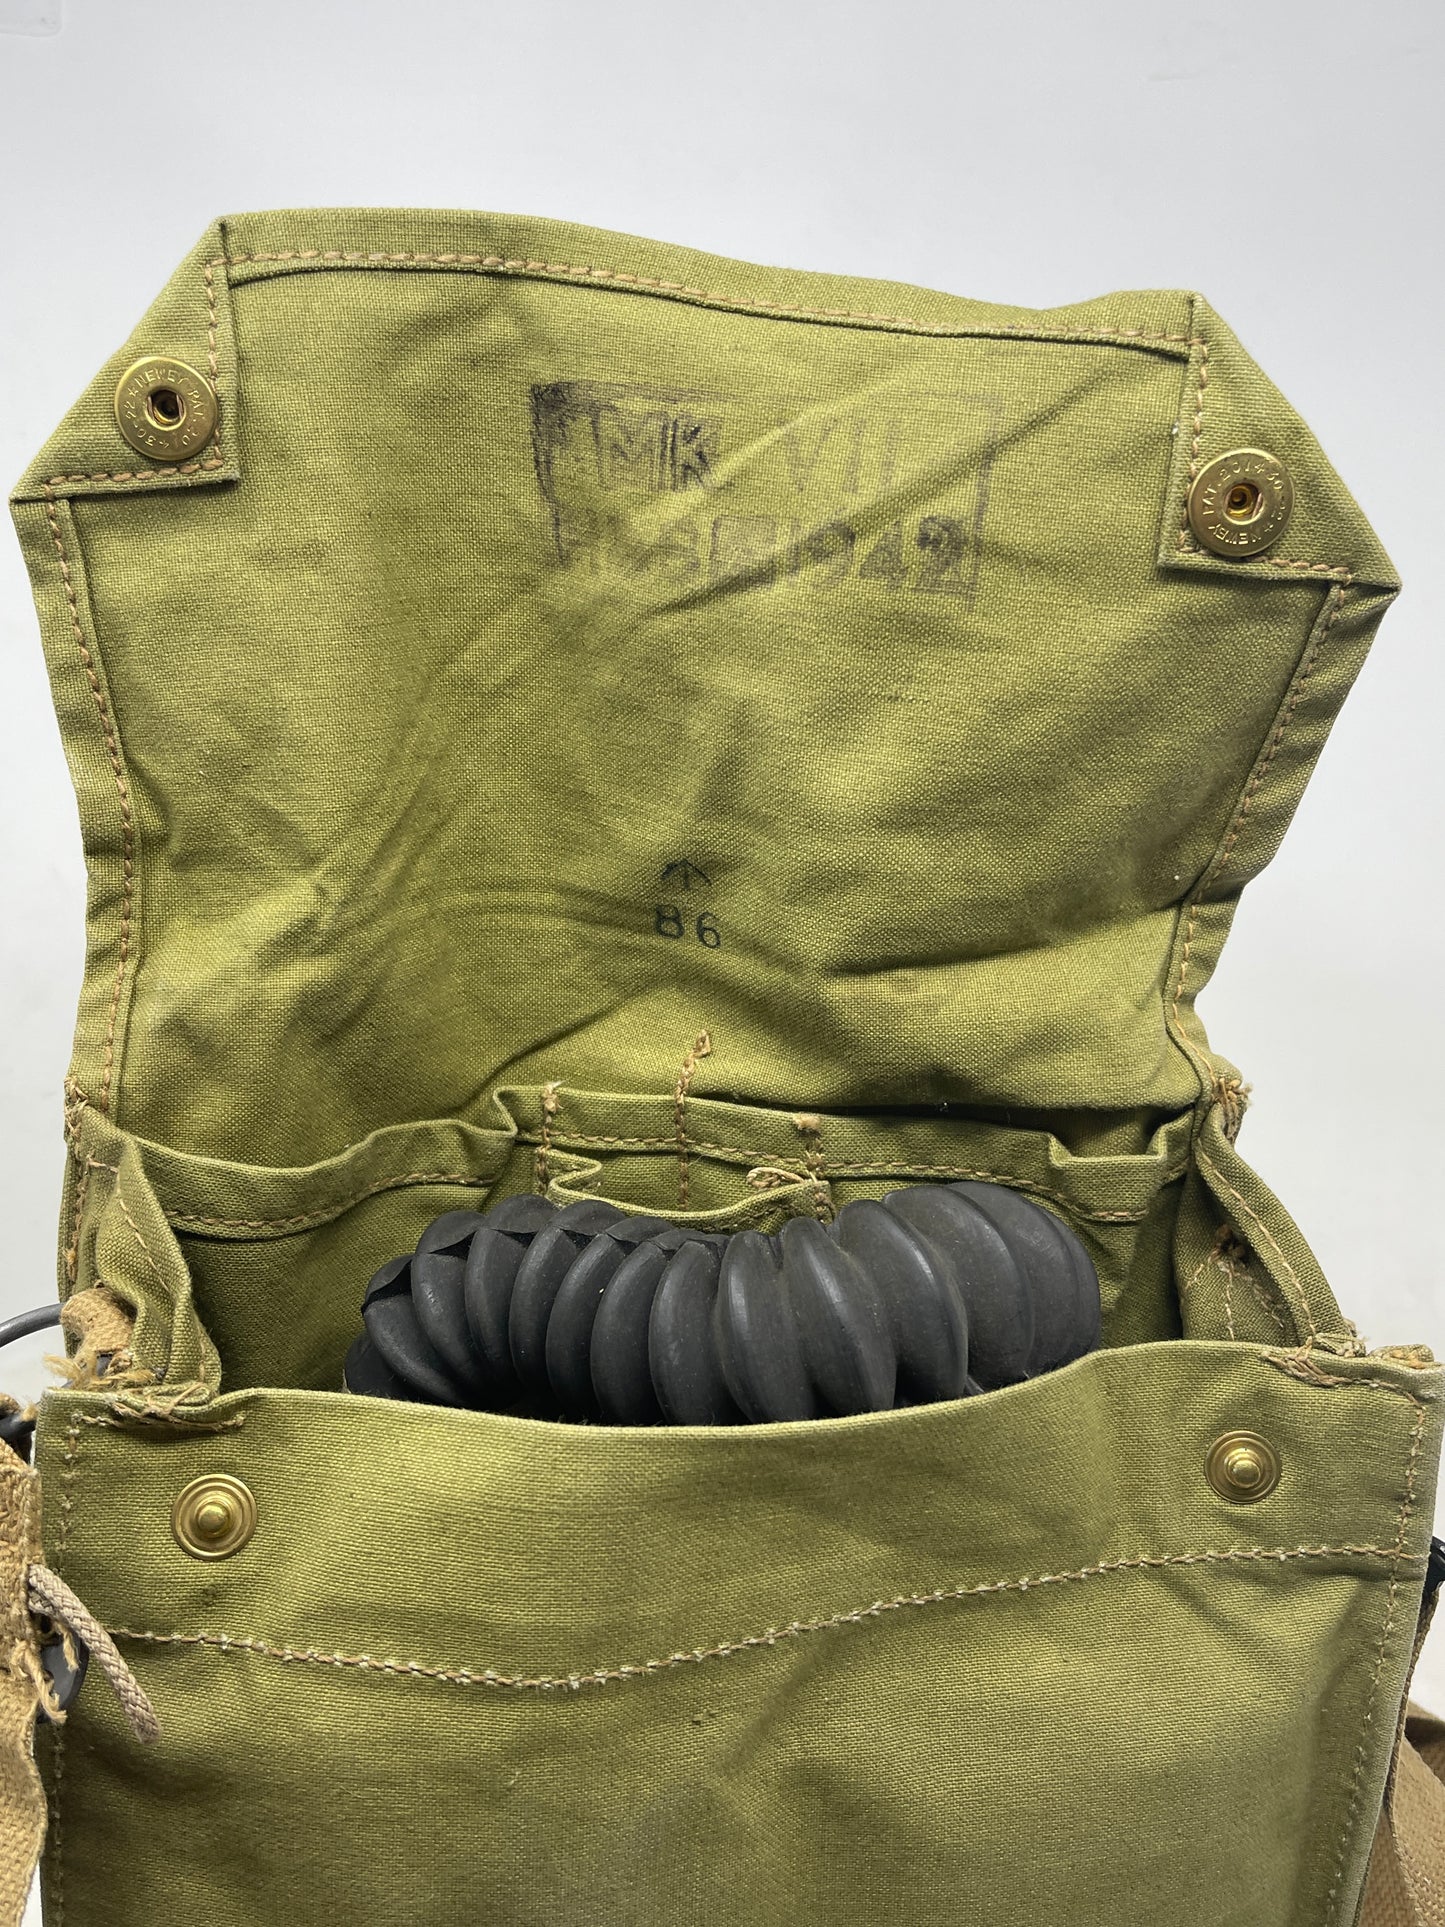 British General Service Respirator (GSR) satchel